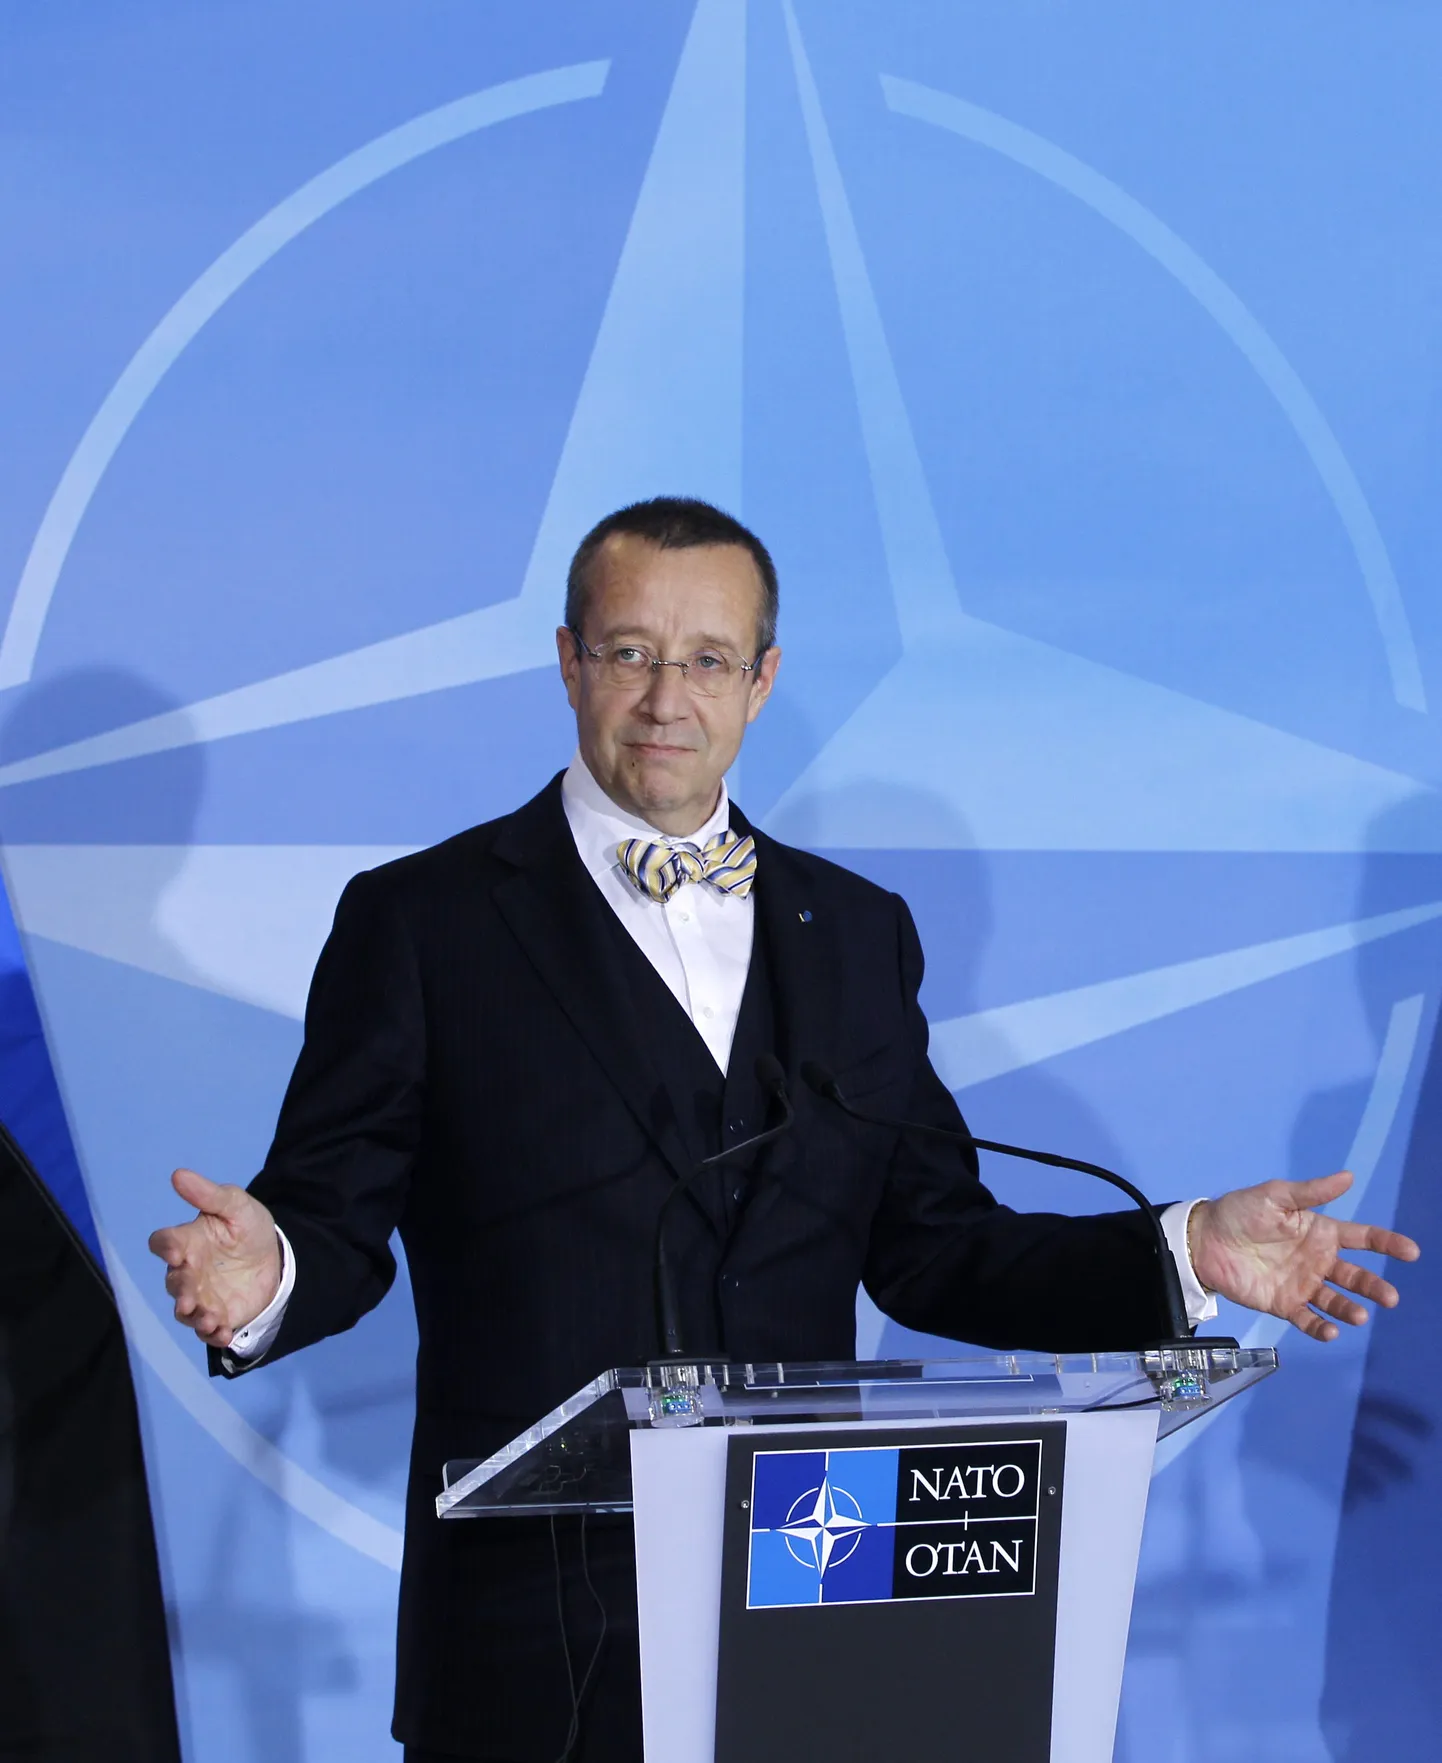 Президент Ильвес на пресс-конференции в штаб-квартире НАТО в Брюсселе.